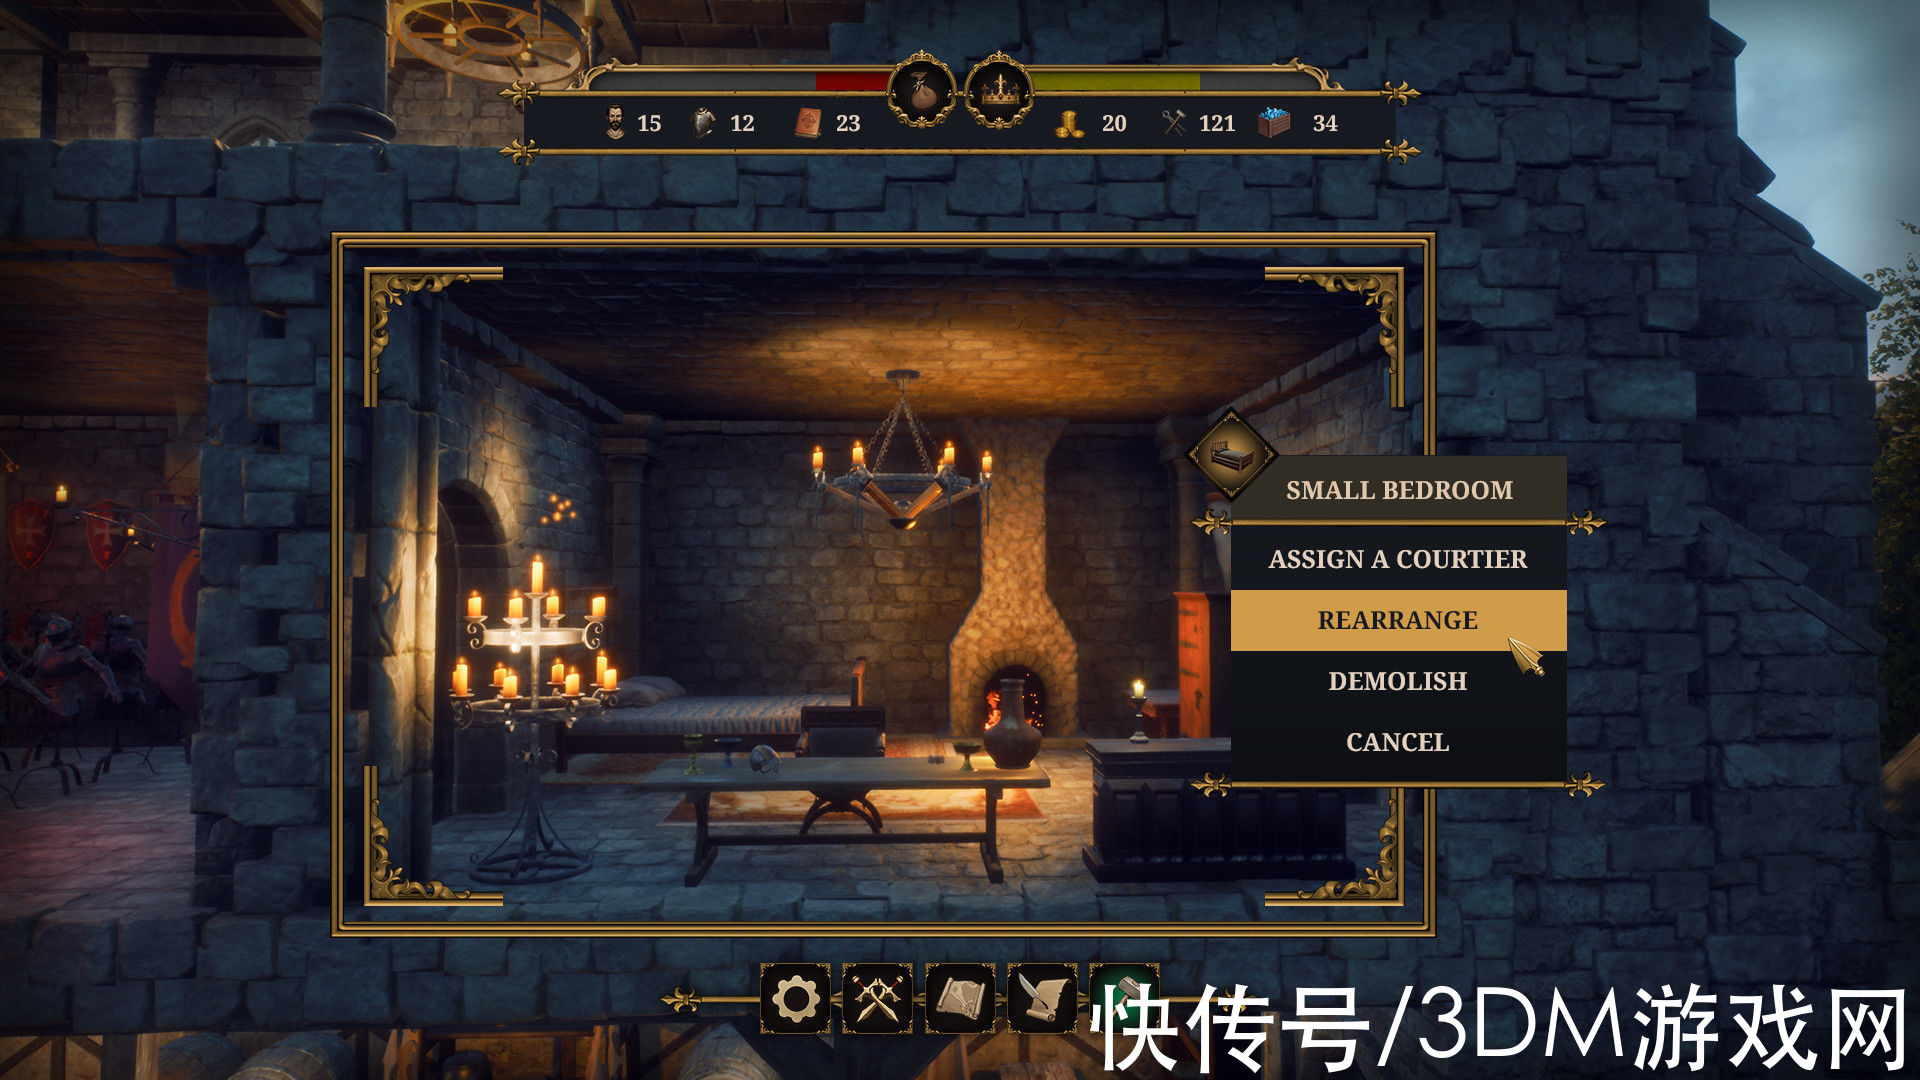 模拟经营游戏|模拟经营游戏《城堡经理》上架Steam 支持简体中文